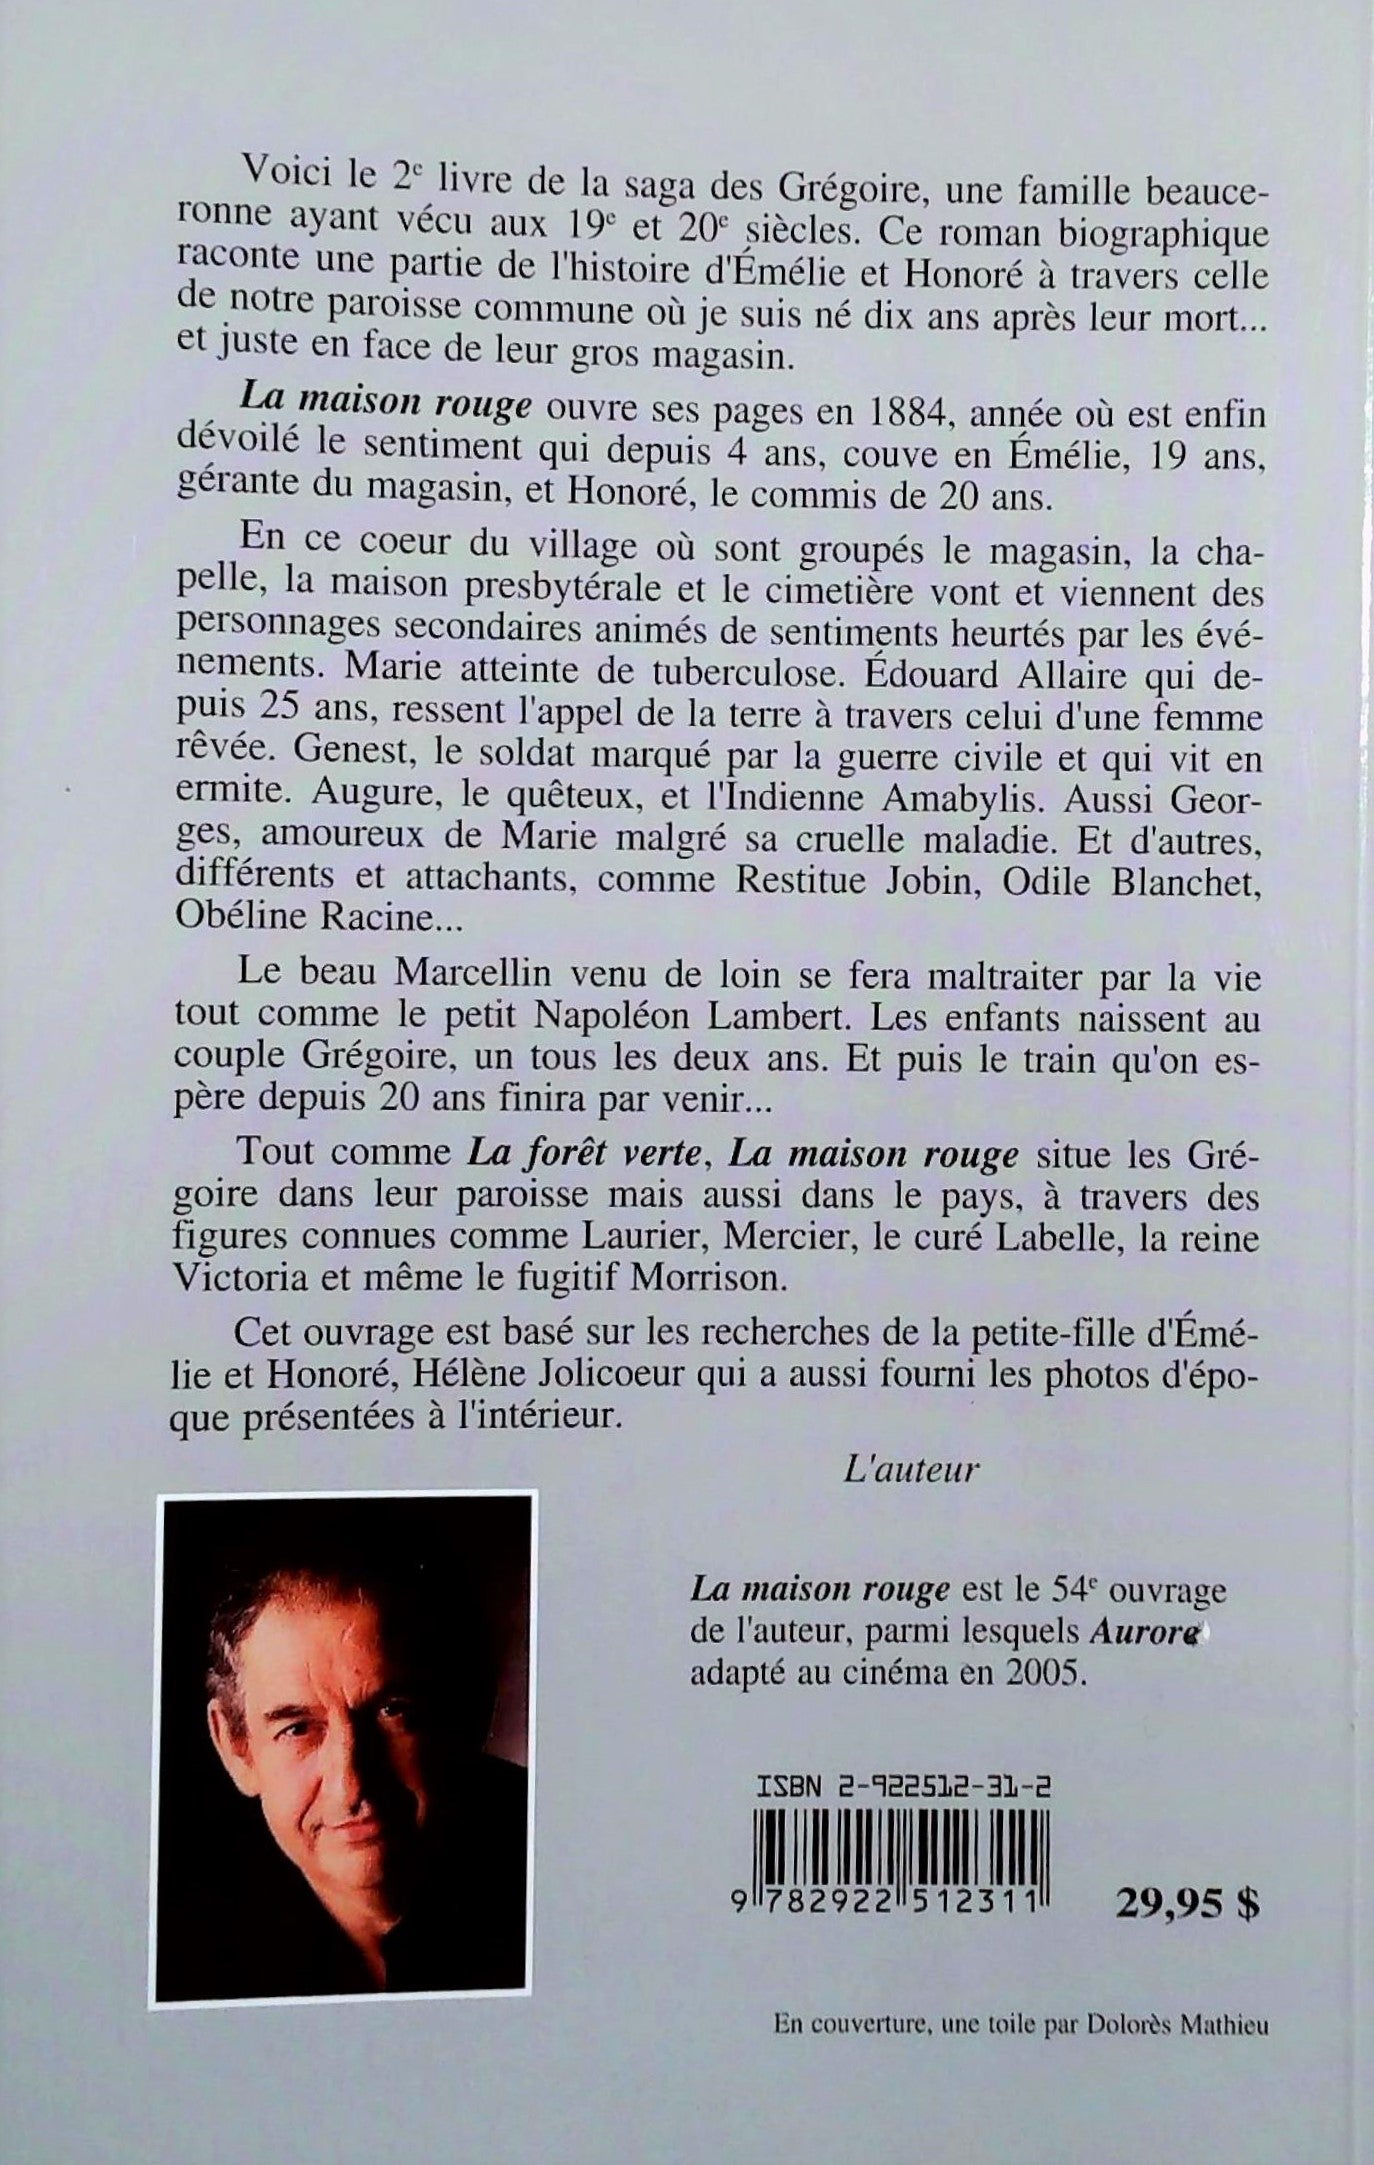 La Saga des Grégoire # 2 : La maison rouge (André Mathieu)